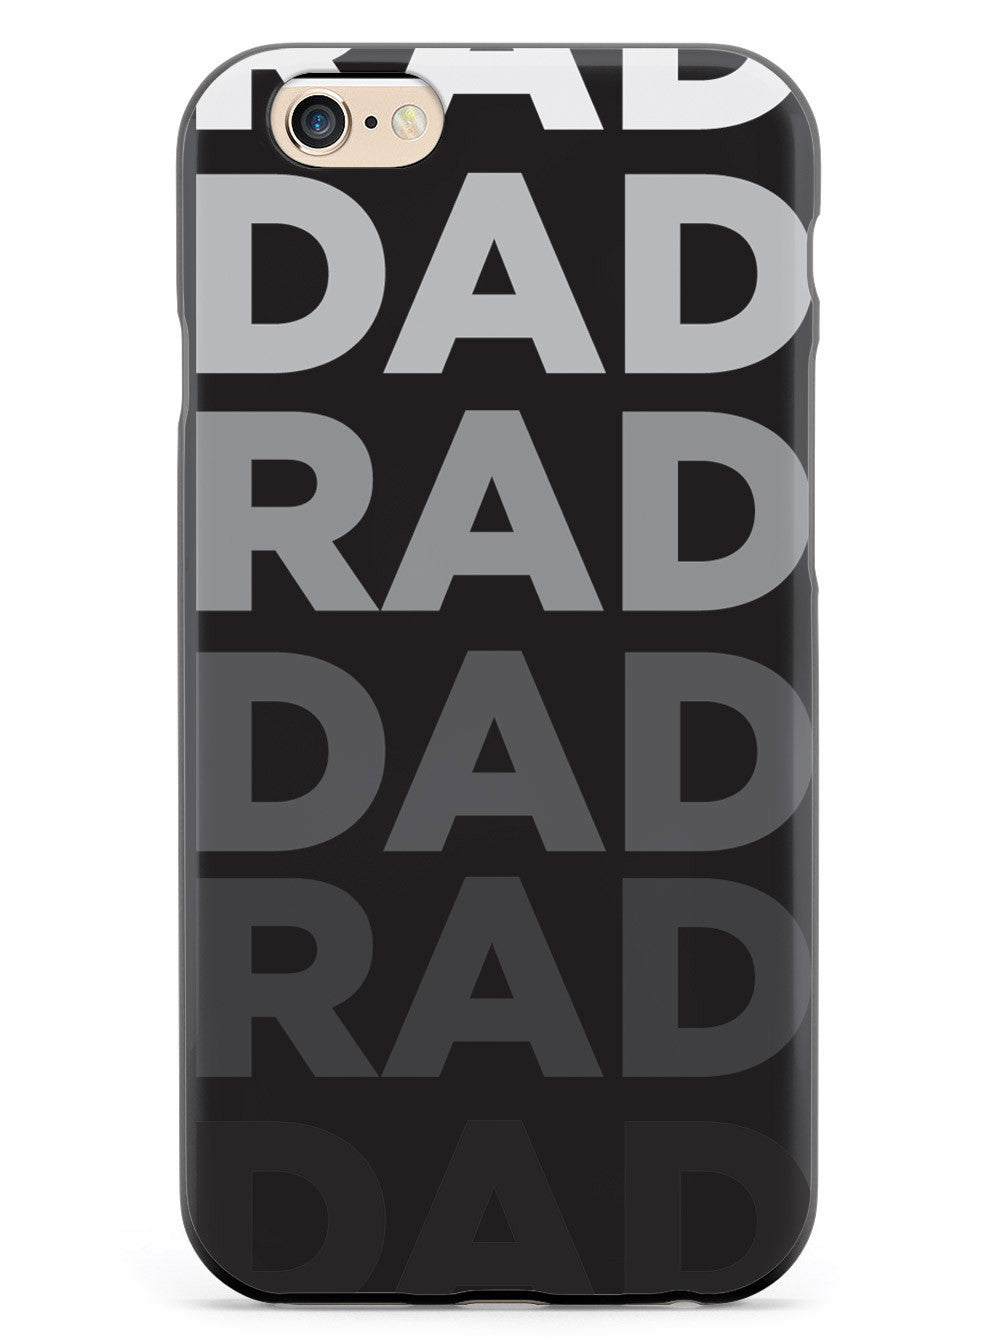 Rad Dad Case